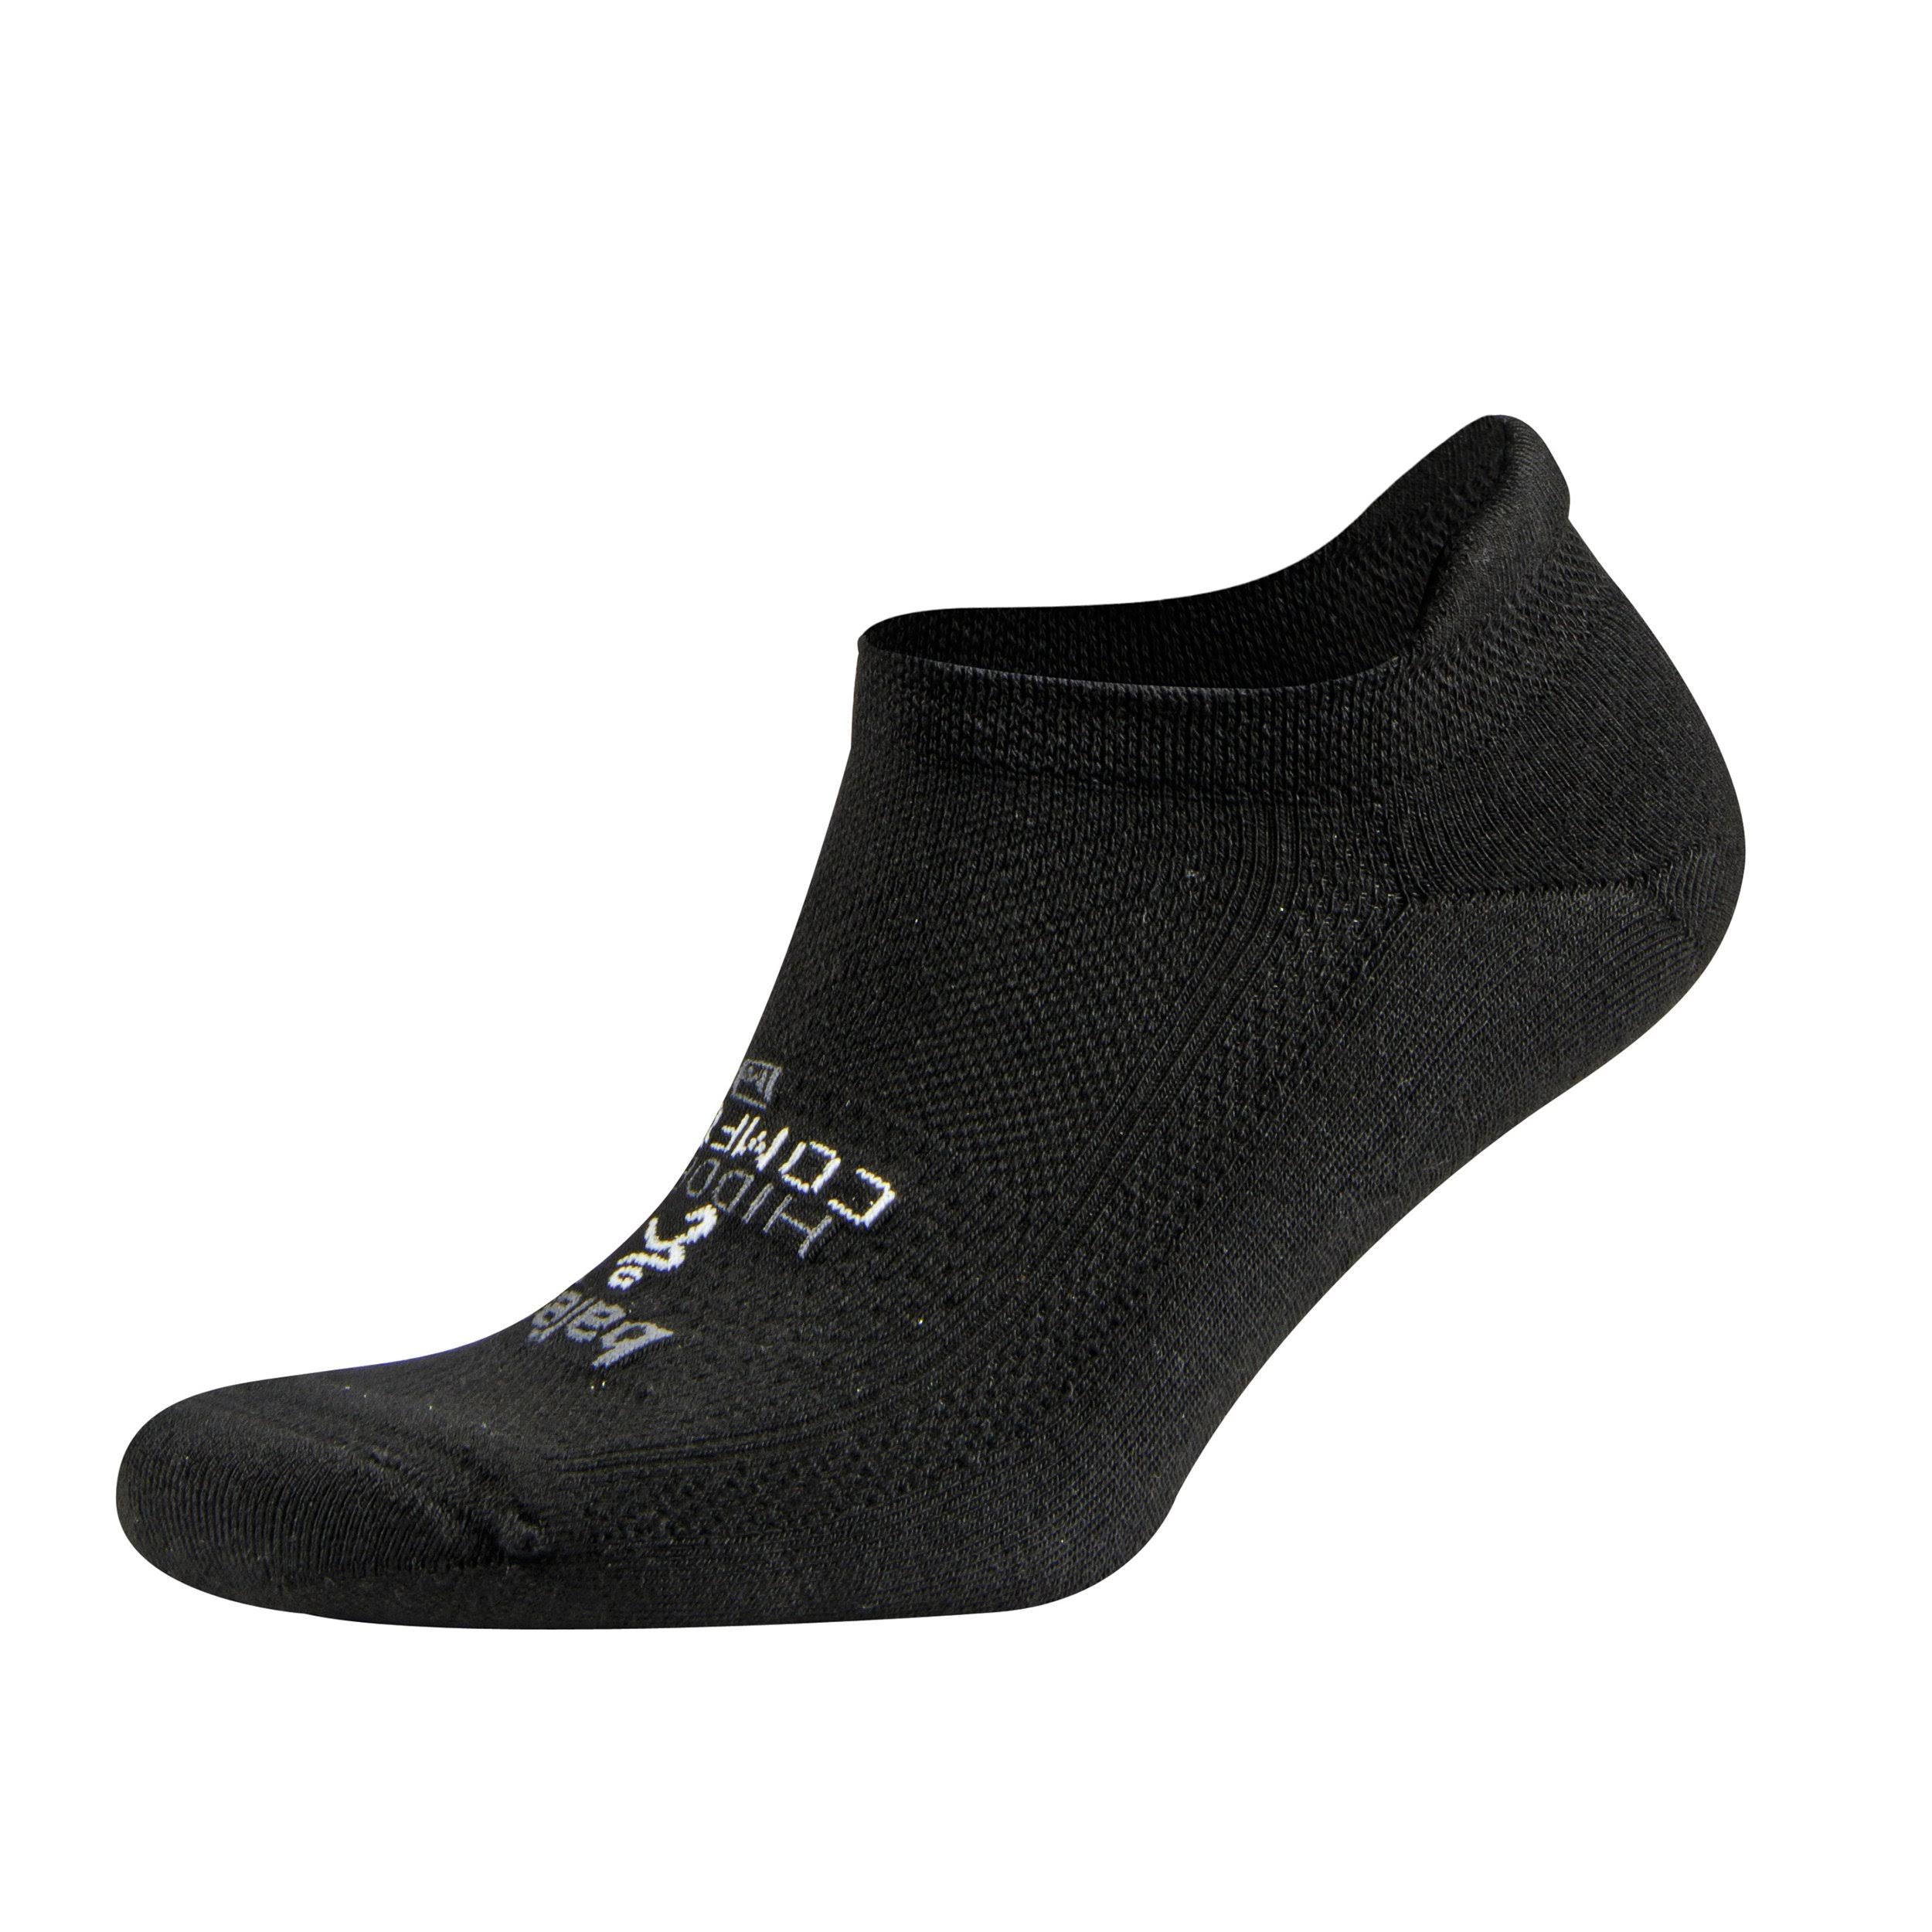 Balega Hidden Comfort Sole Cushioning Running Socks - Black, Small